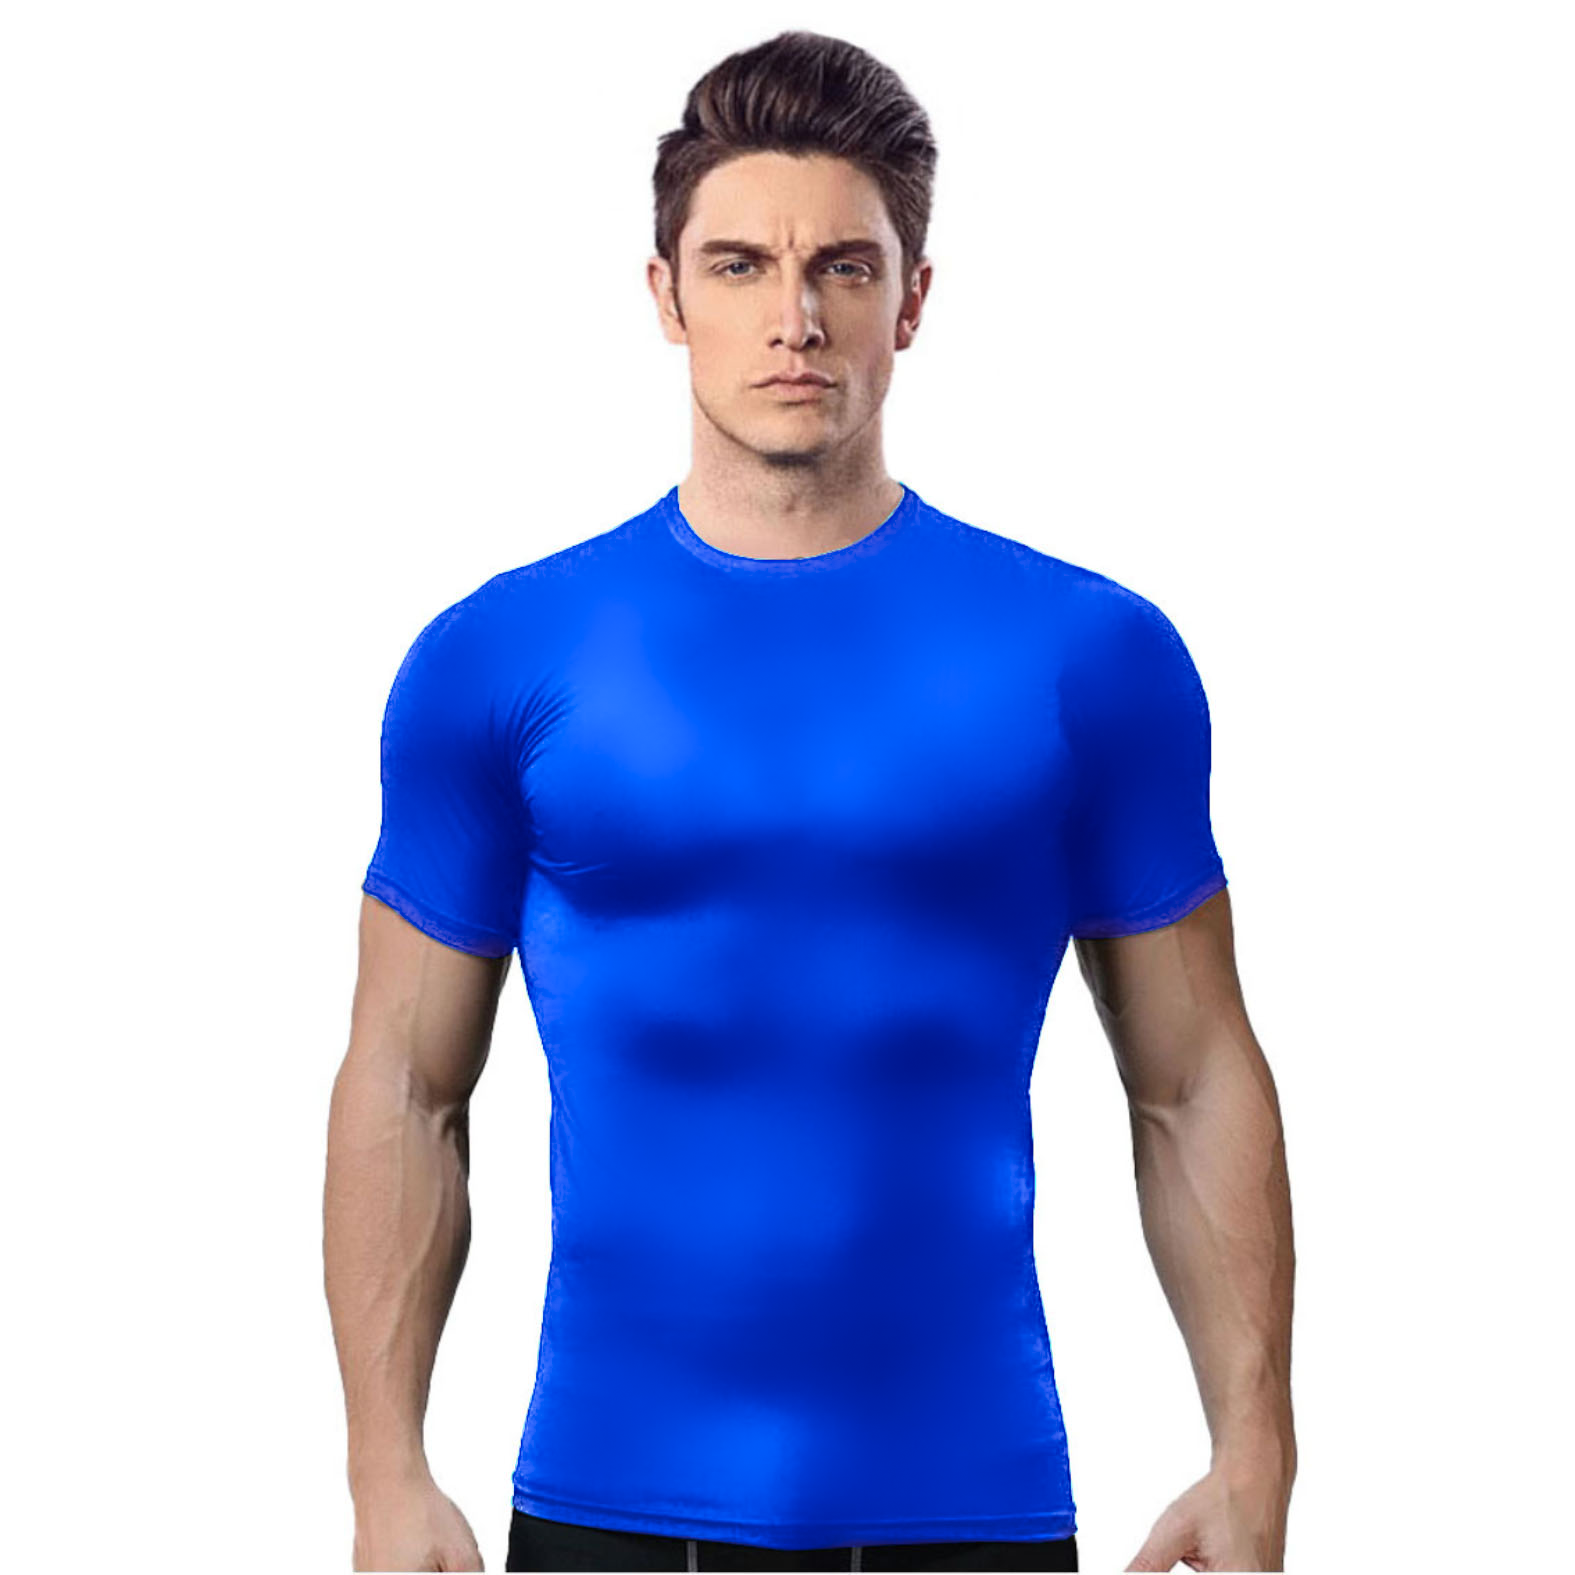 Camiseta térmica UV esportiva manga longa unissex Vierge